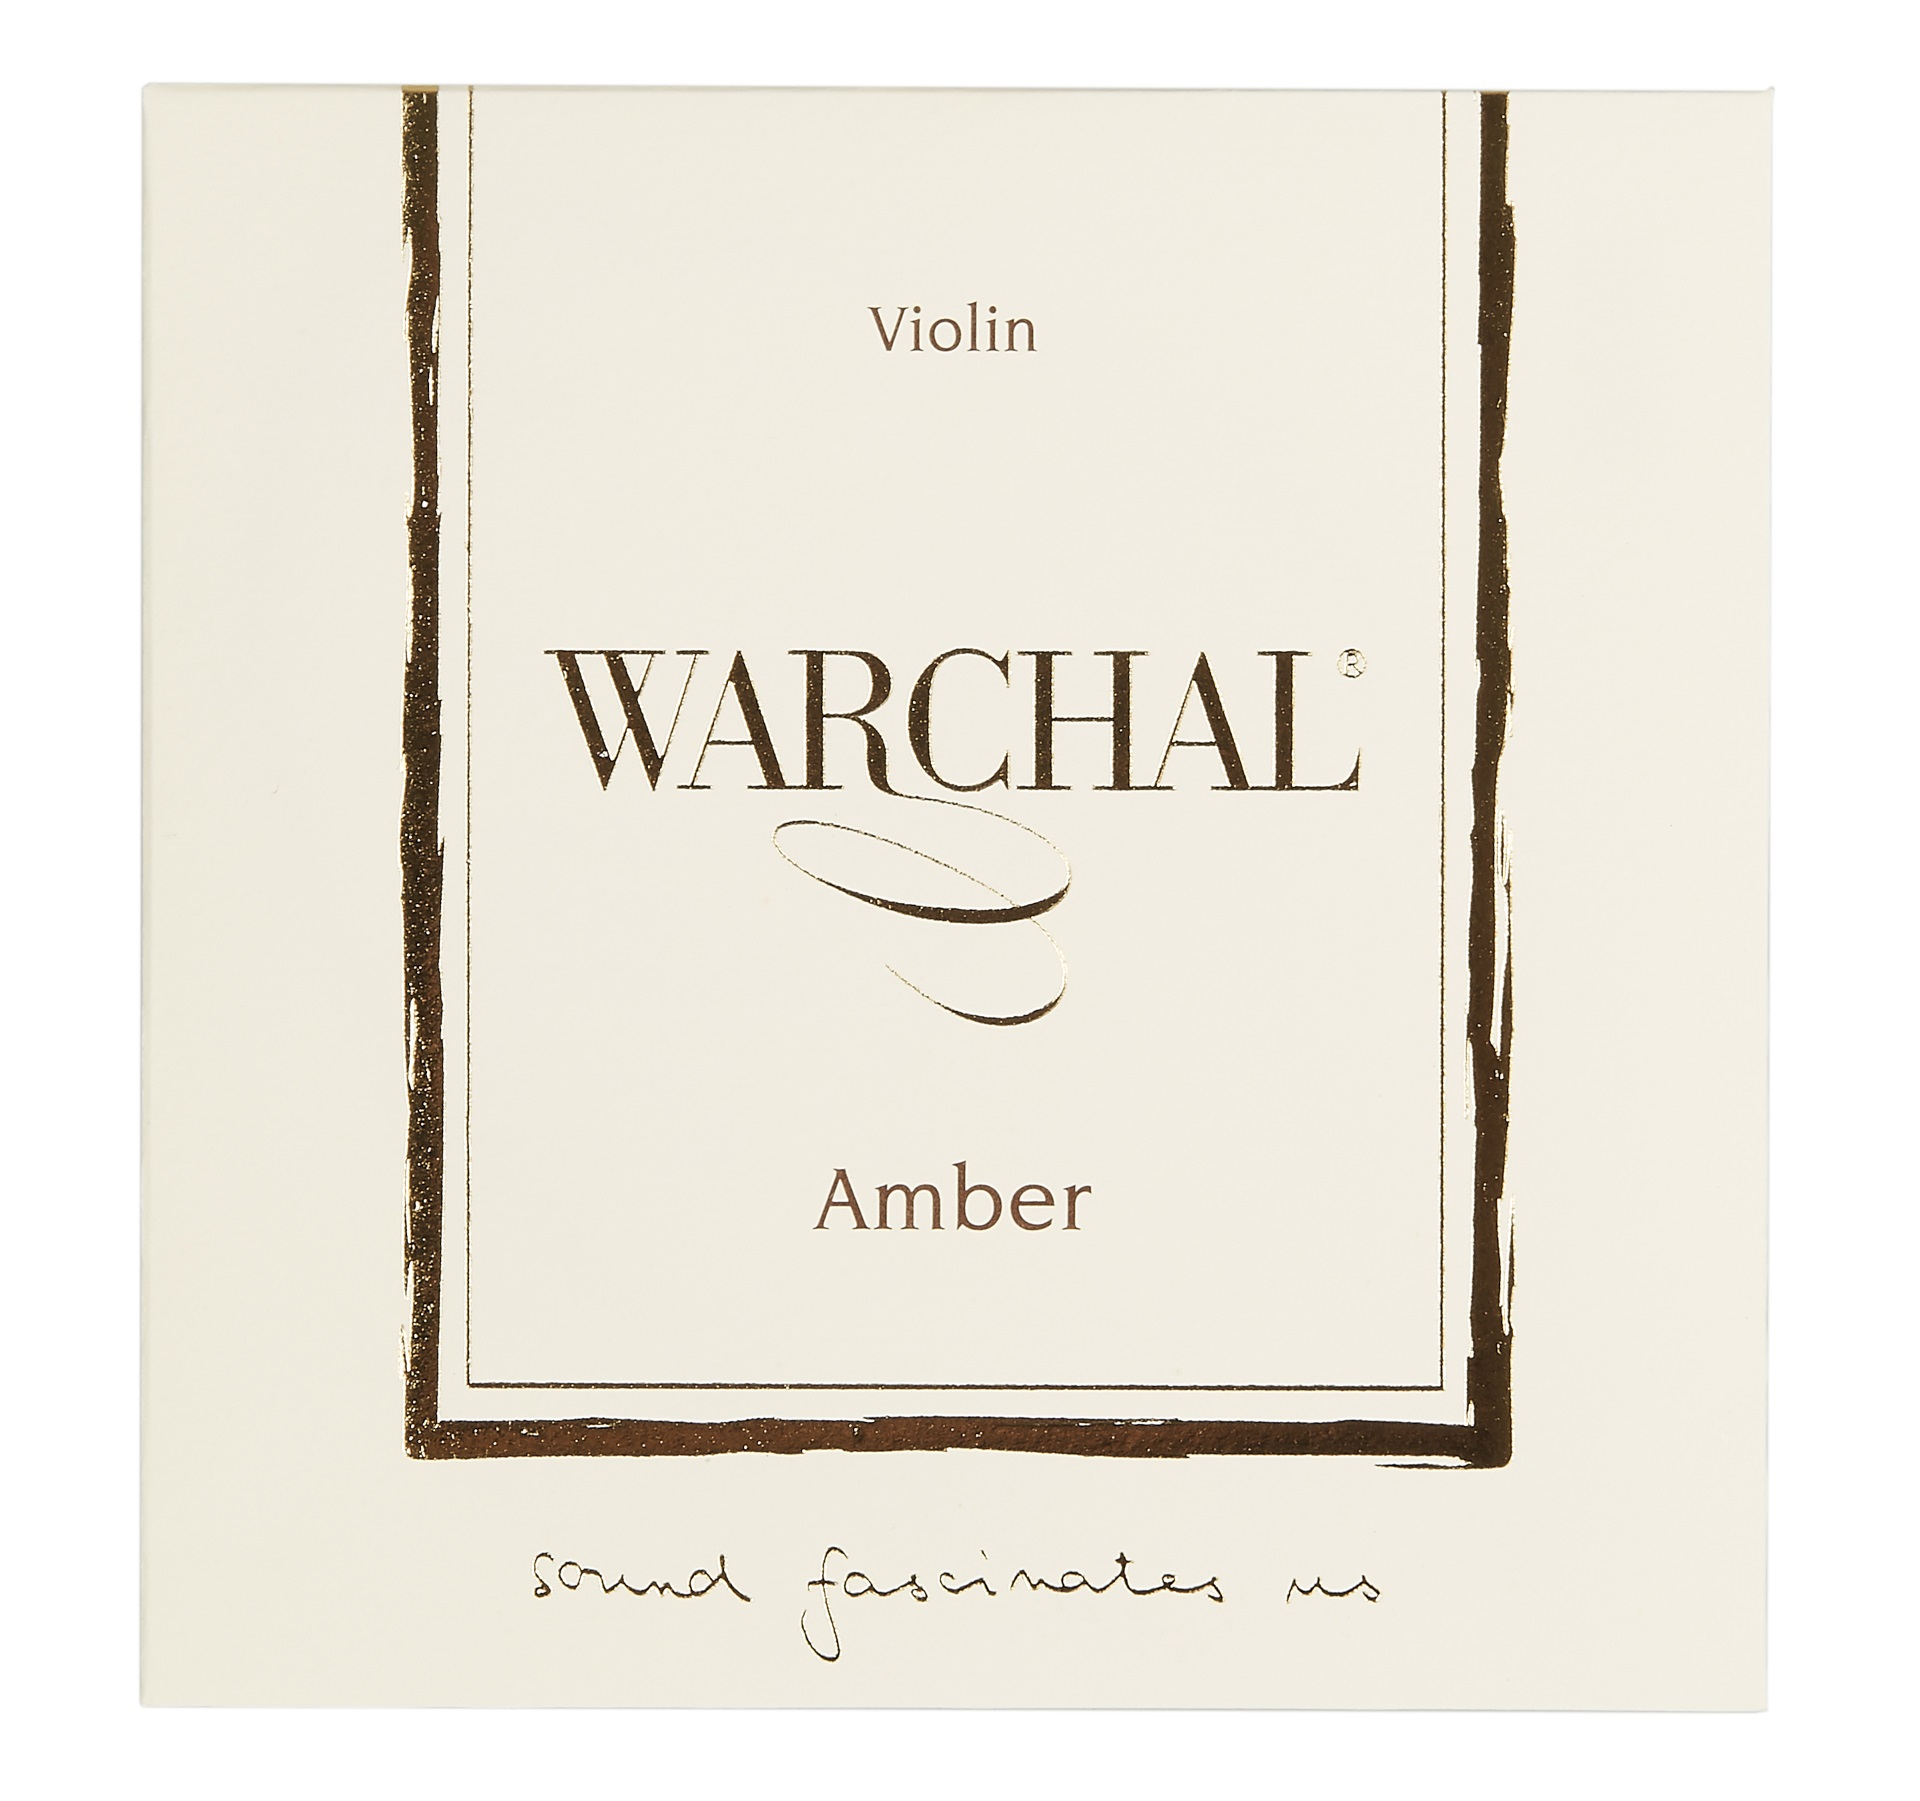 Warchal Amber 700 Set Vln